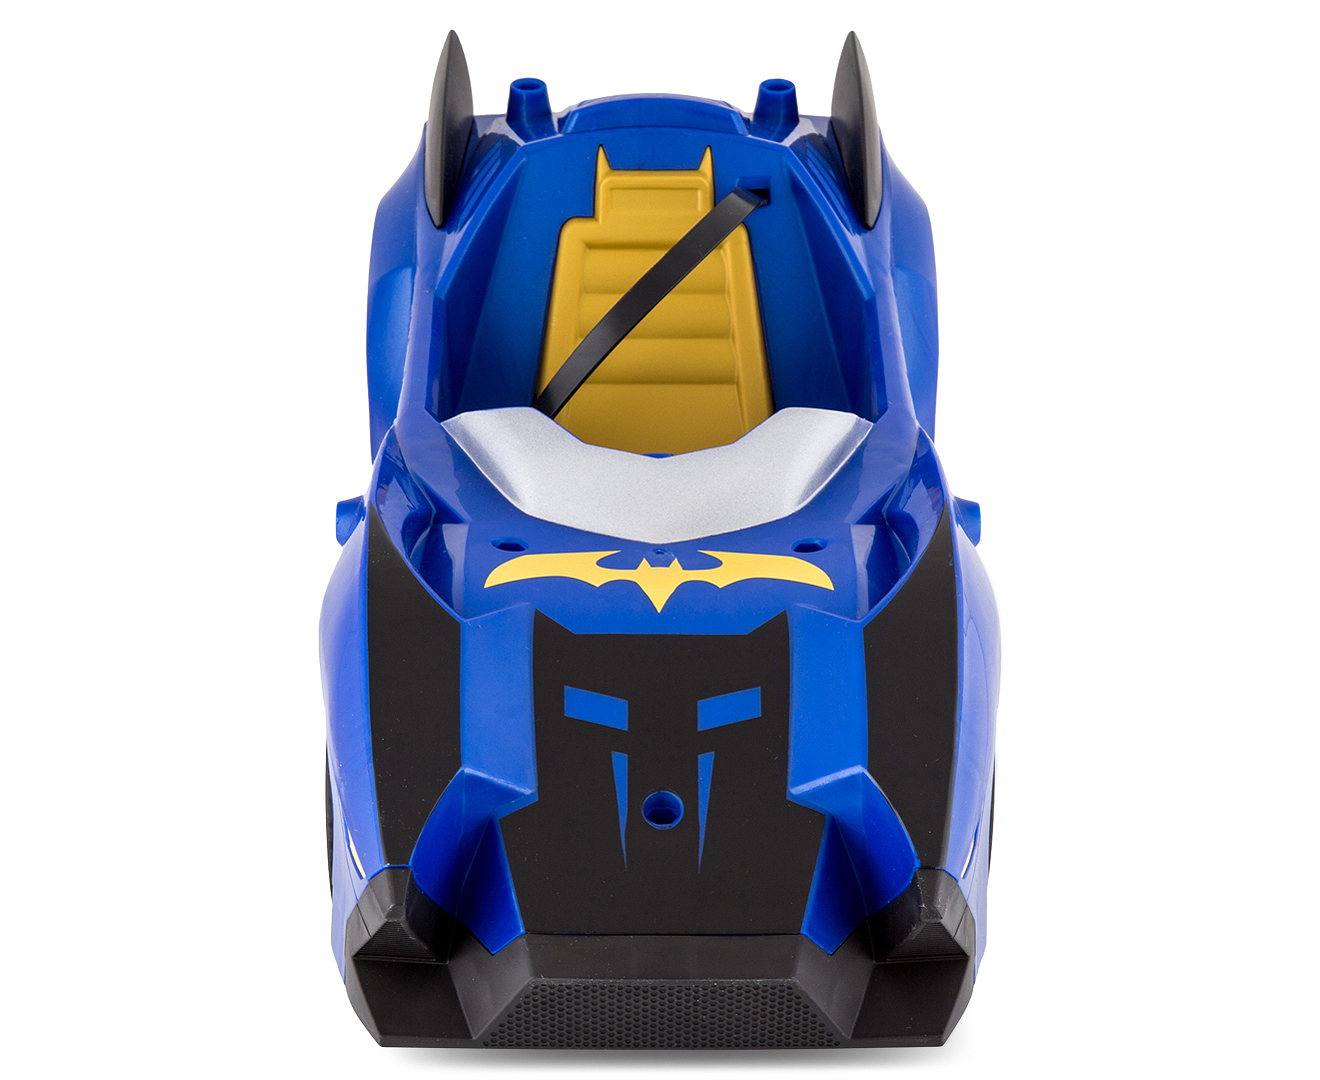 Batman Unlimited Batmobile Toy | Catch.com.au